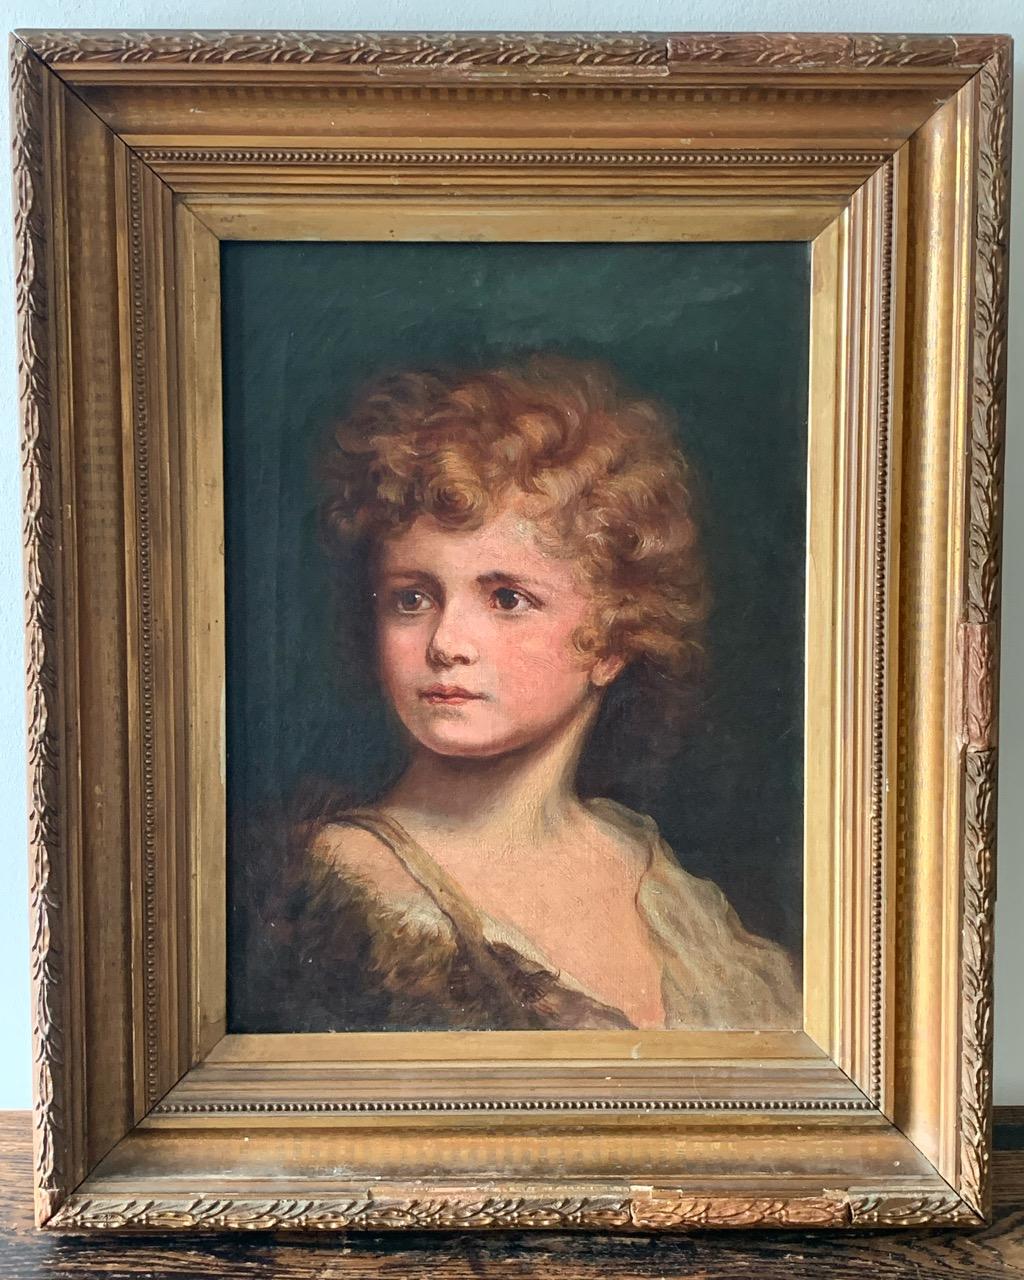 Eine schöne Qualität 19. Jahrhundert Öl auf Leinwand Porträtmalerei eines jungen Mannes in einem Zeitraum Rahmen. Einige alte Reparaturen am Rahmen.